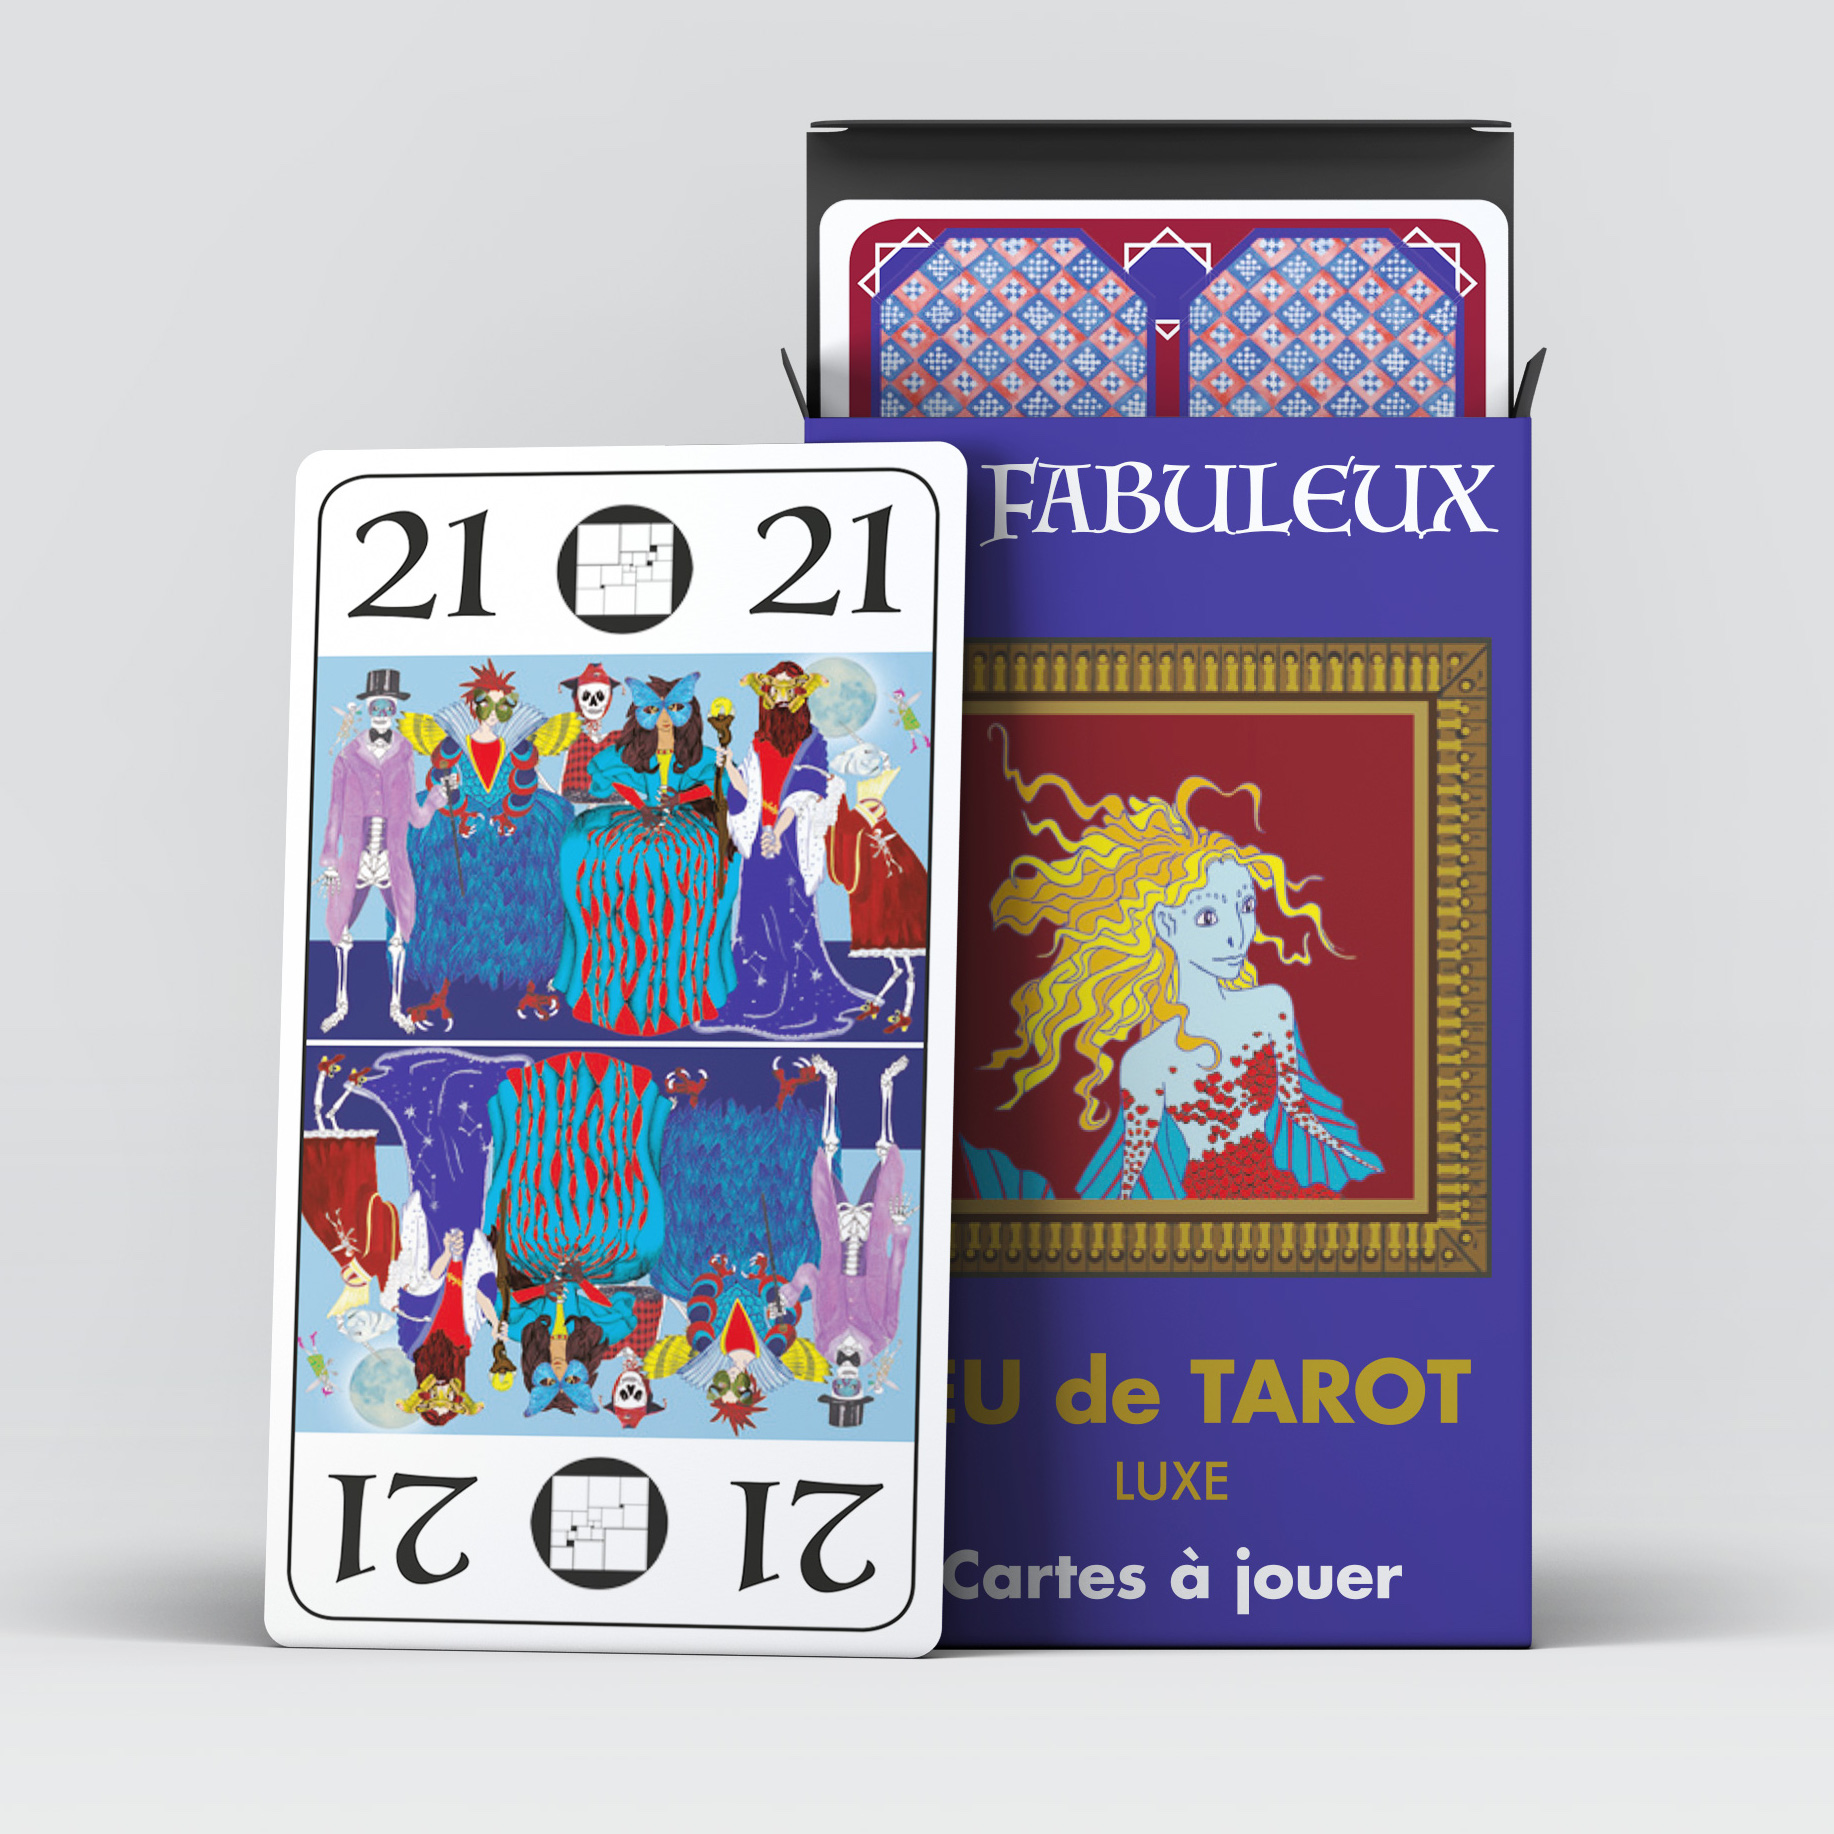 Jeu de cartes Tarot